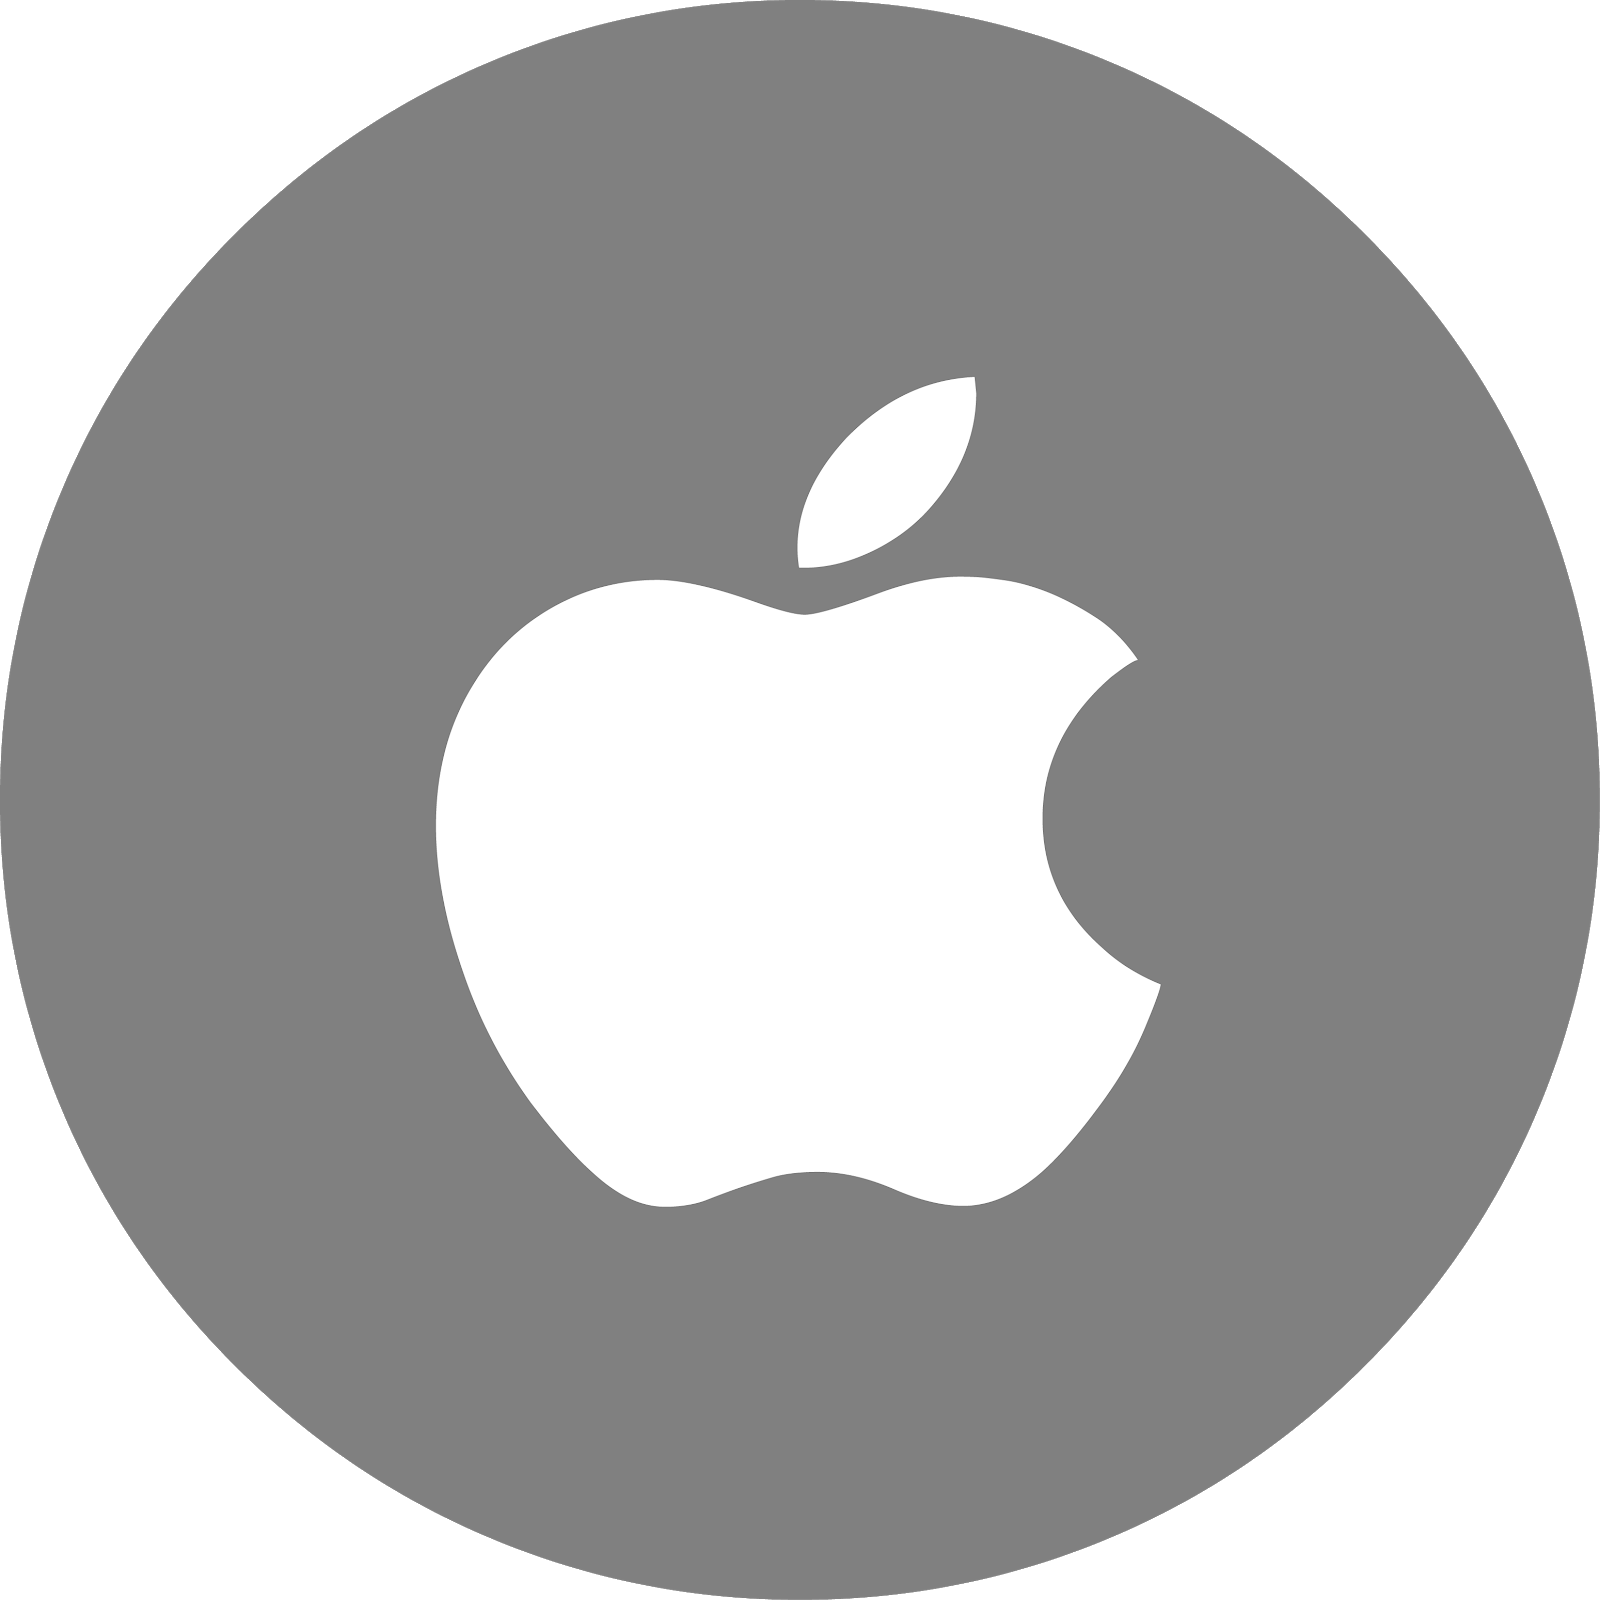 تحميل شعار ايفون فيكتور مجانا تنزيل لوغو أبل مجانا فيكتور Apple الصور